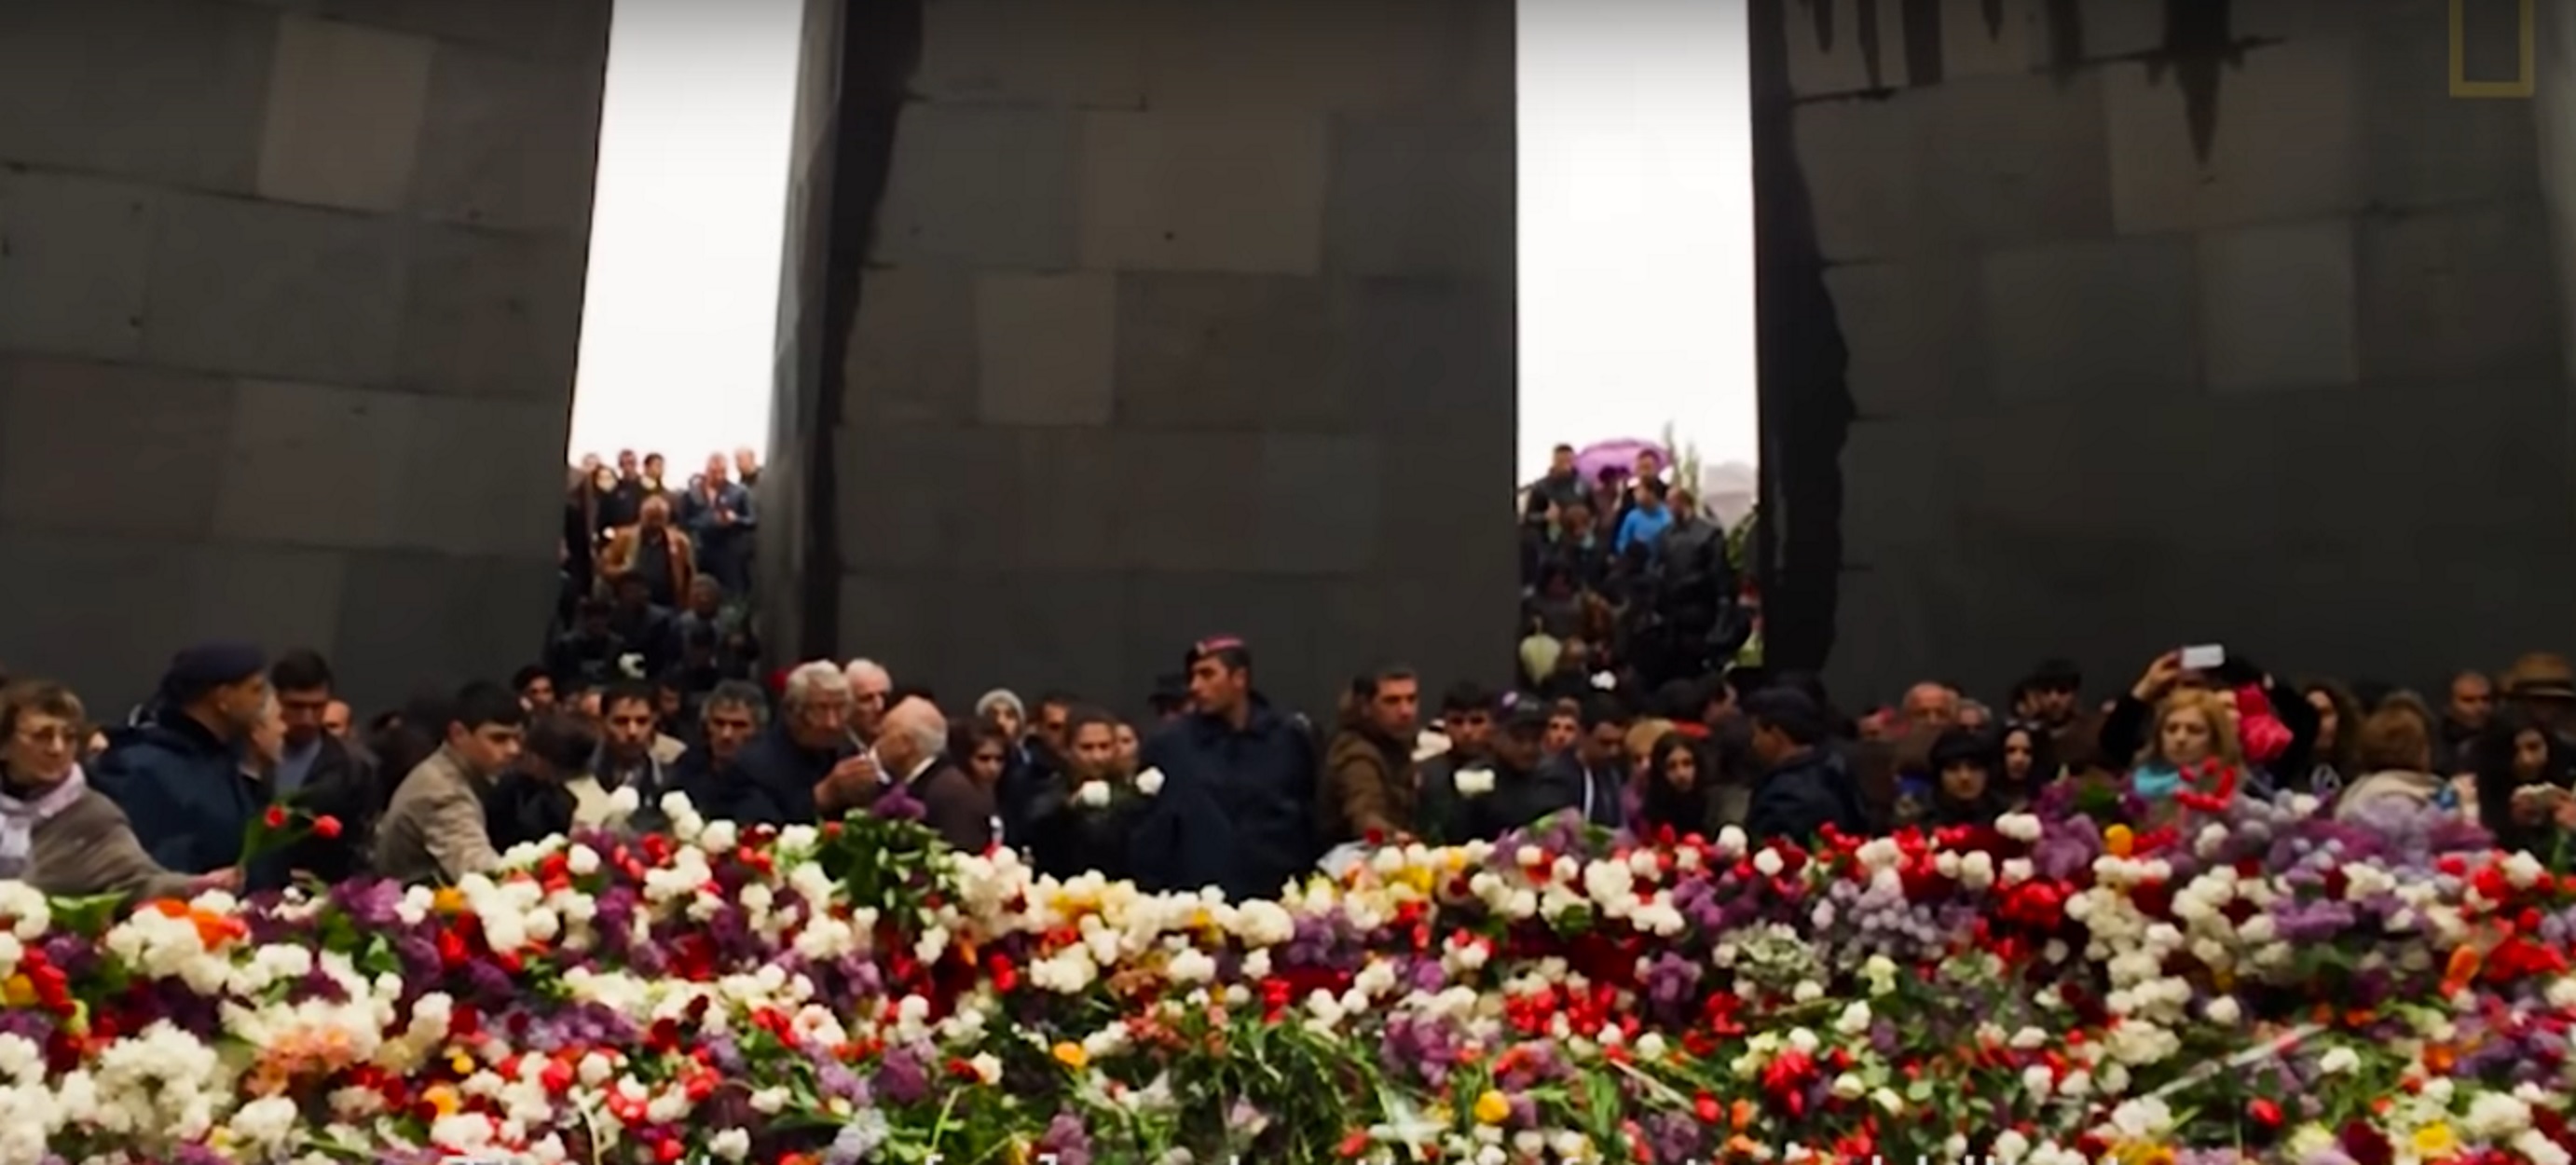 Αρμενία: Ευχαριστεί τις ΗΠΑ για το ιστορικό ψήφισμα αναγνώρισης της γενοκτονίας – video